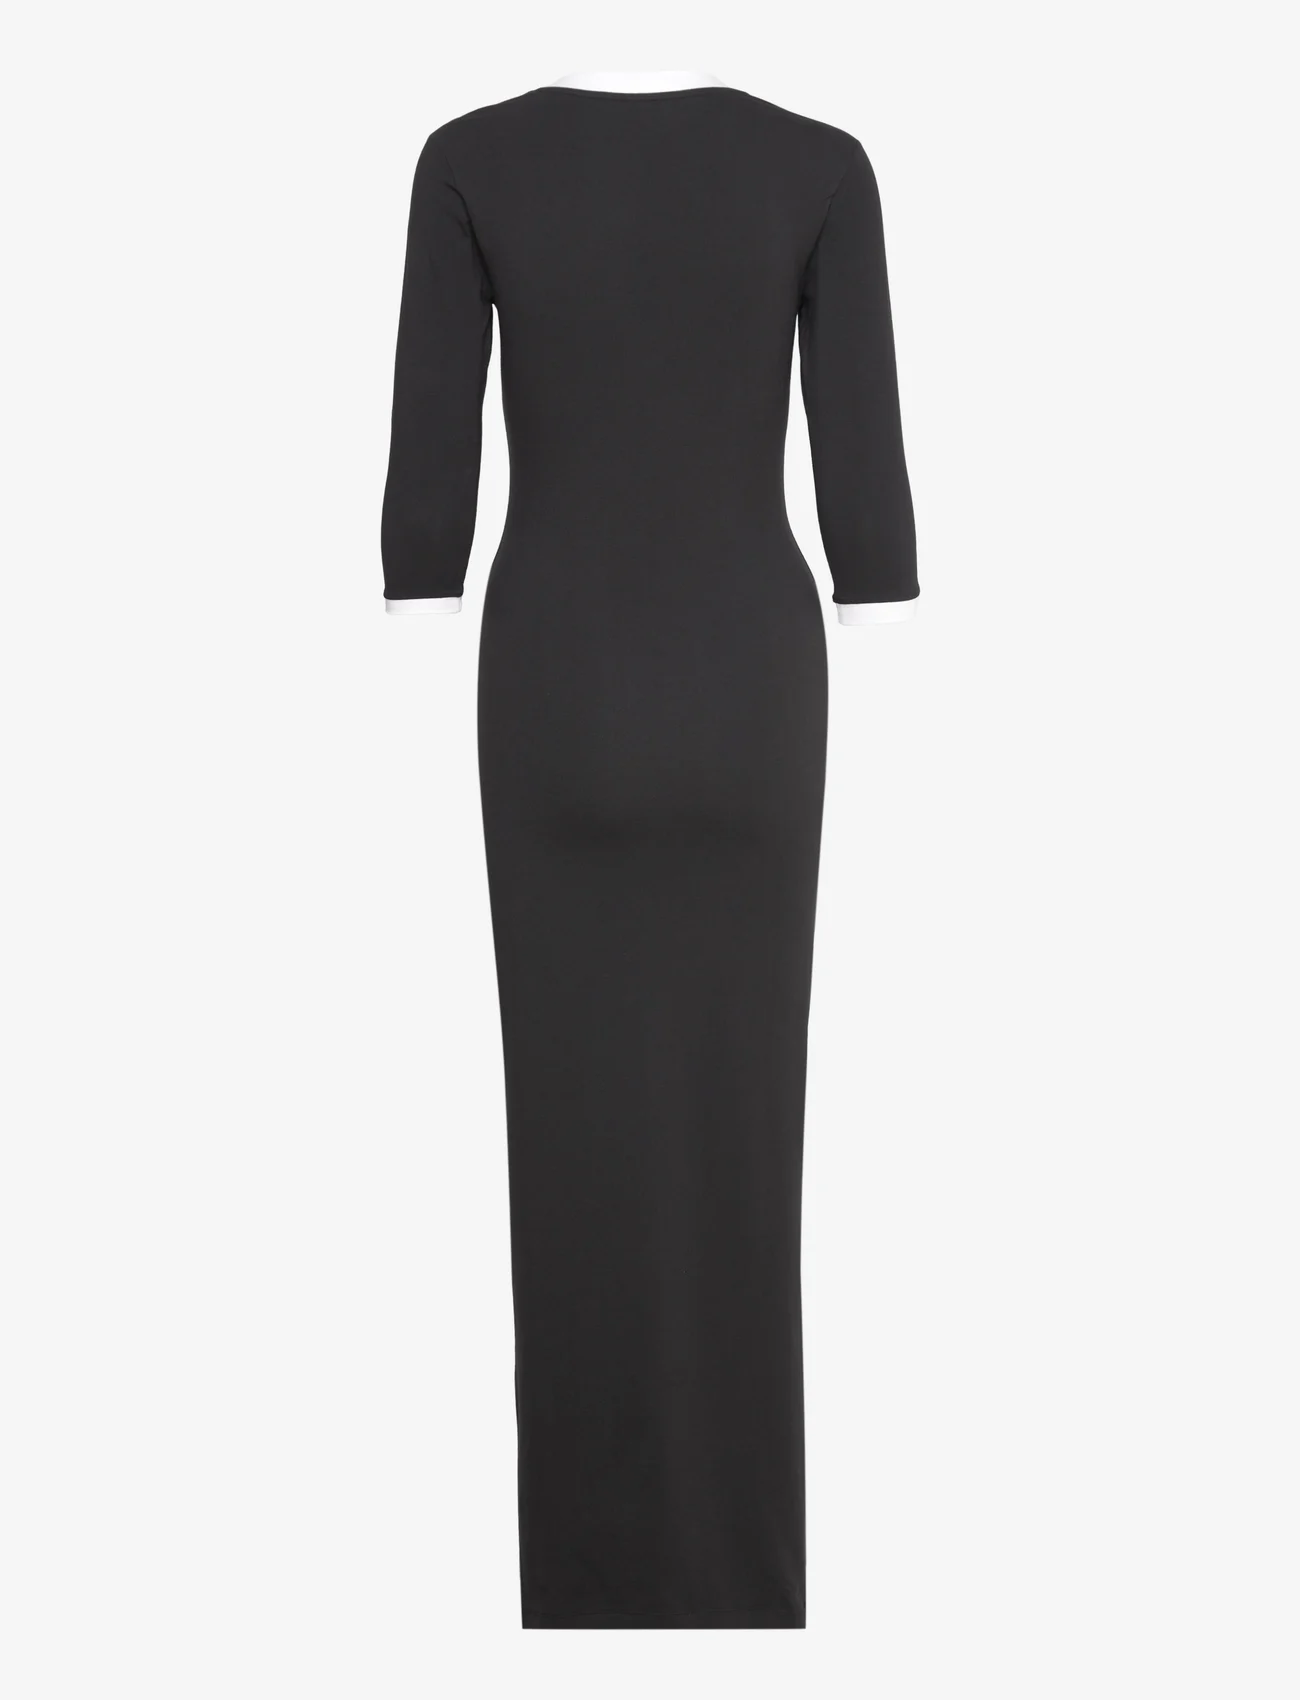 adidas Originals - MAXI DRESS V - jurken & rokjes - black - 1